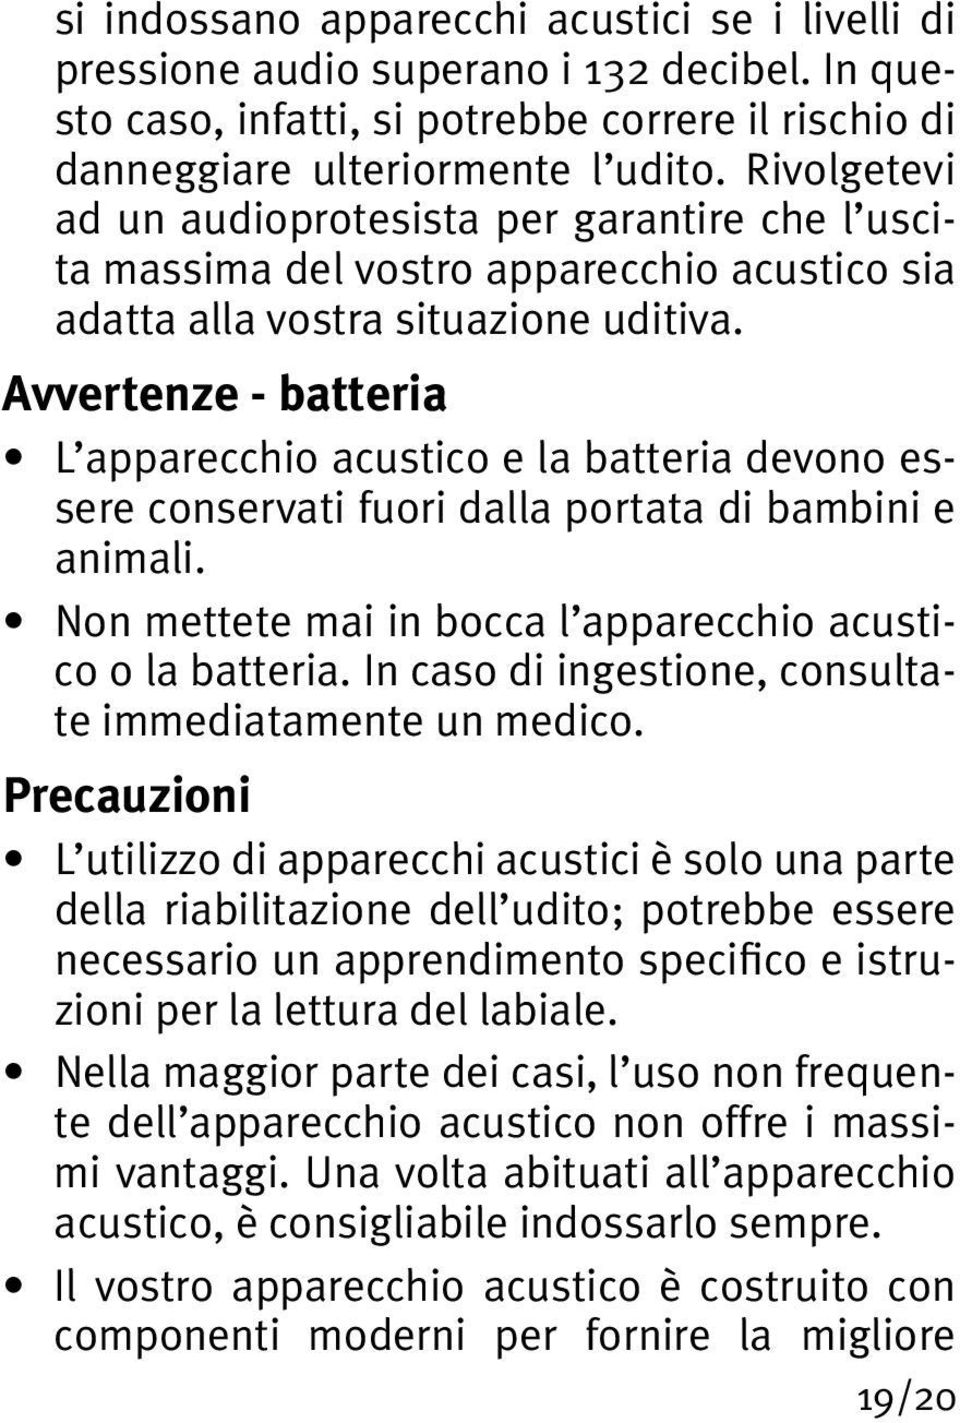 Avvertenze - batteria L apparecchio acustico e la batteria devono essere conservati fuori dalla portata di bambini e animali. Non mettete mai in bocca l apparecchio acustico o la batteria.